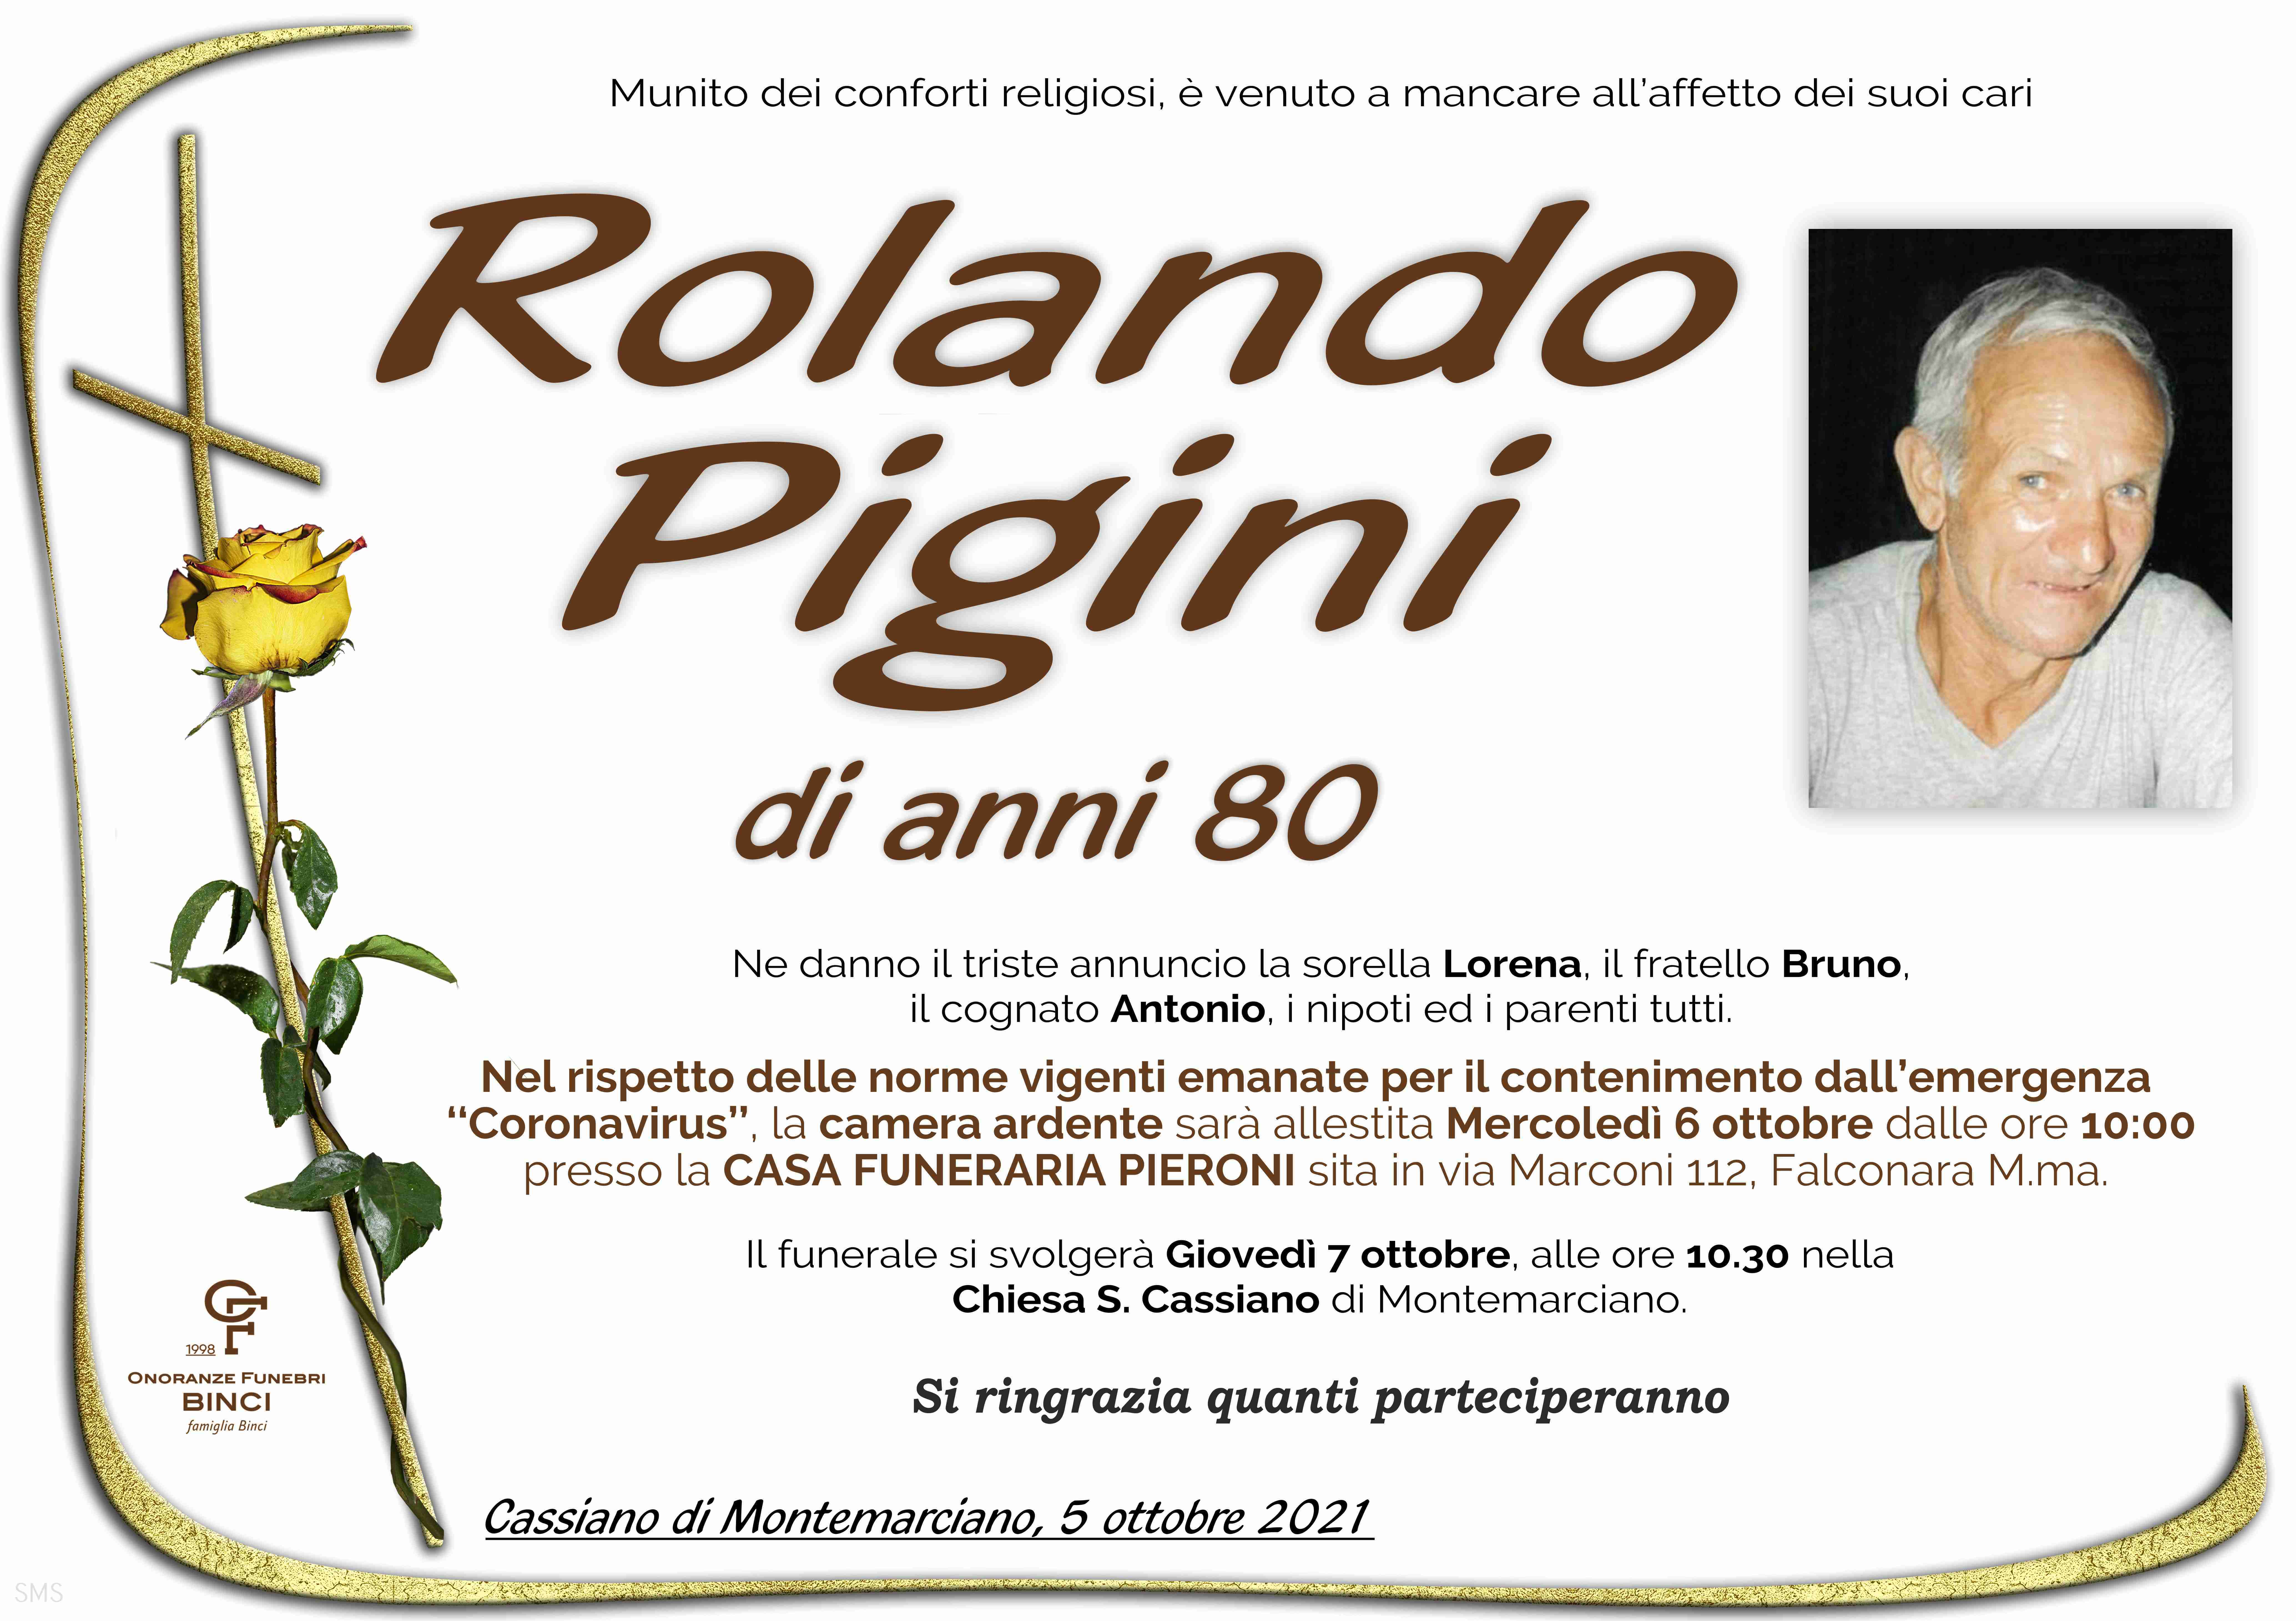 Rolando Pigini